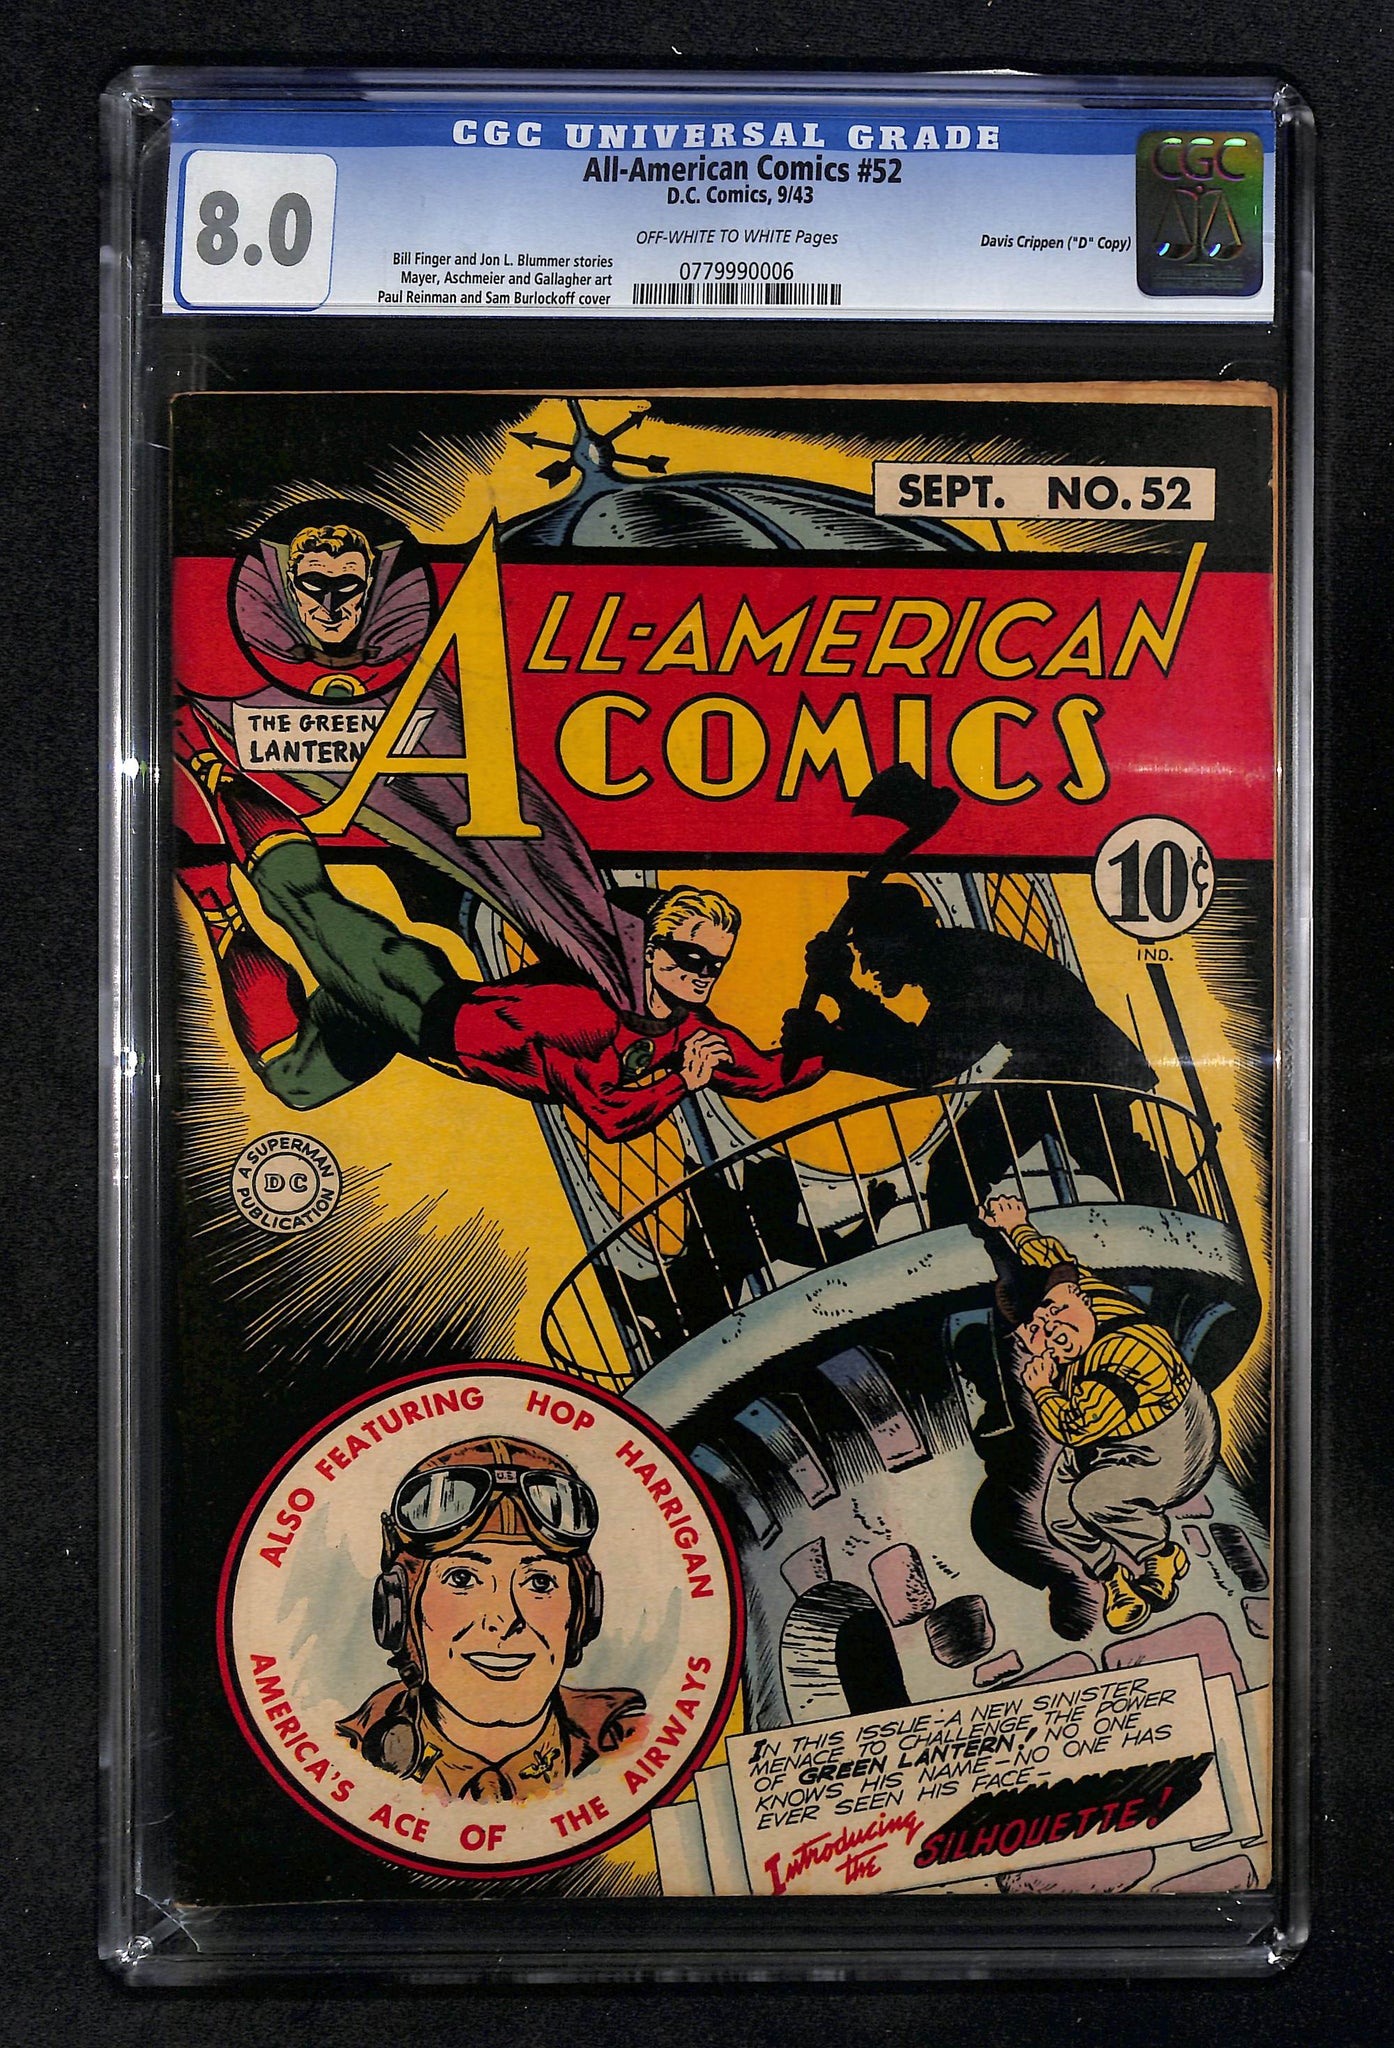 All-American Comics #52 CGC 8.0 "D" Copy